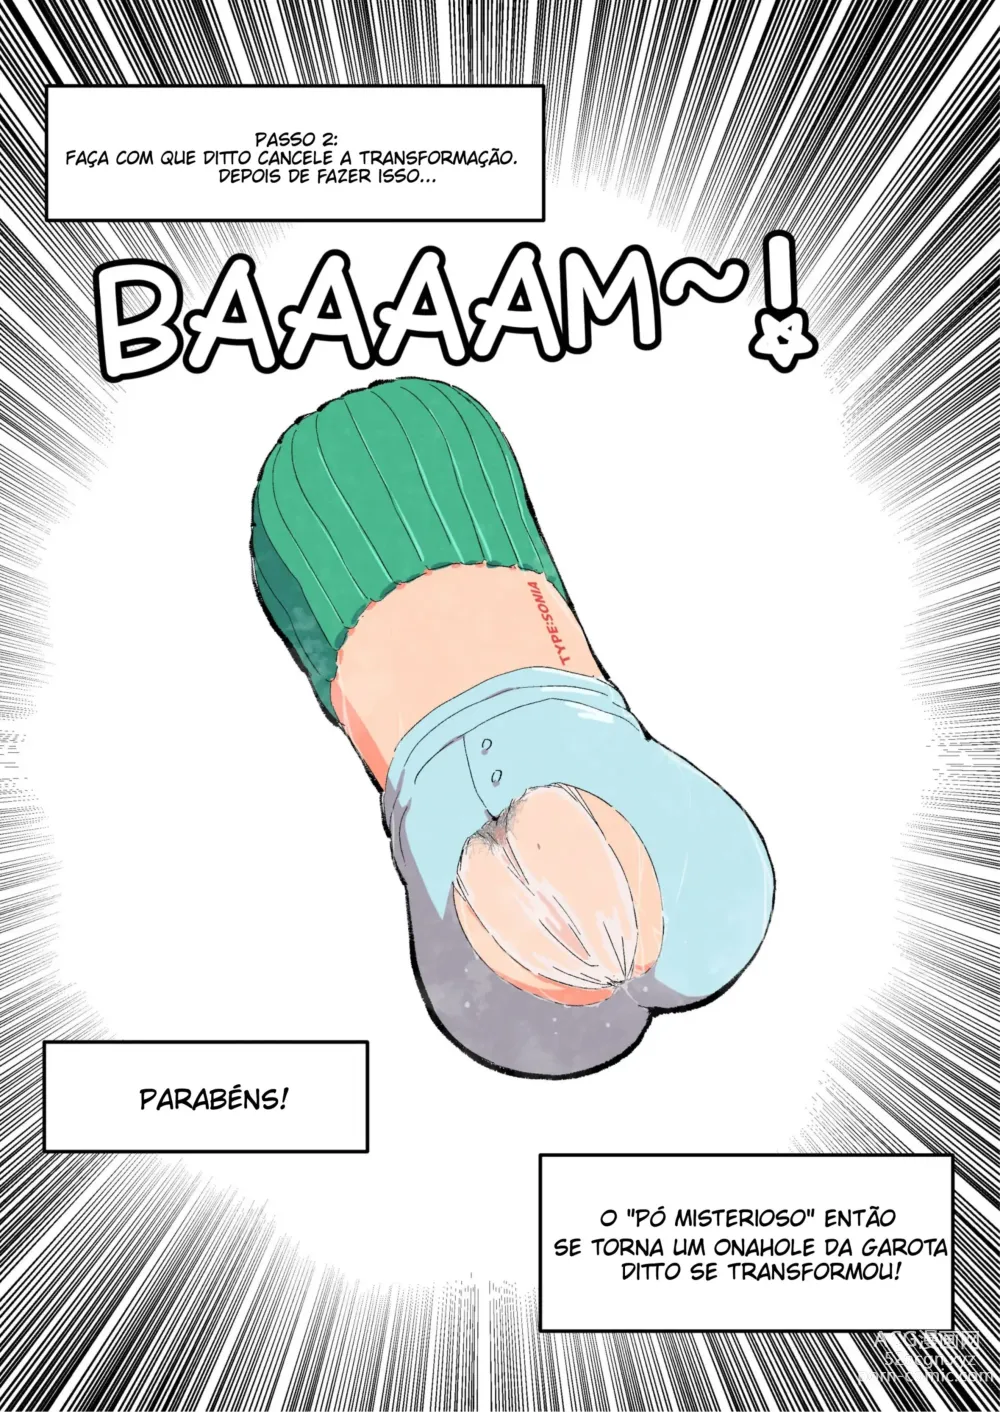 Page 4 of manga Woomochichi] Introducing! Gallars new Pokemon, Ona'nah!